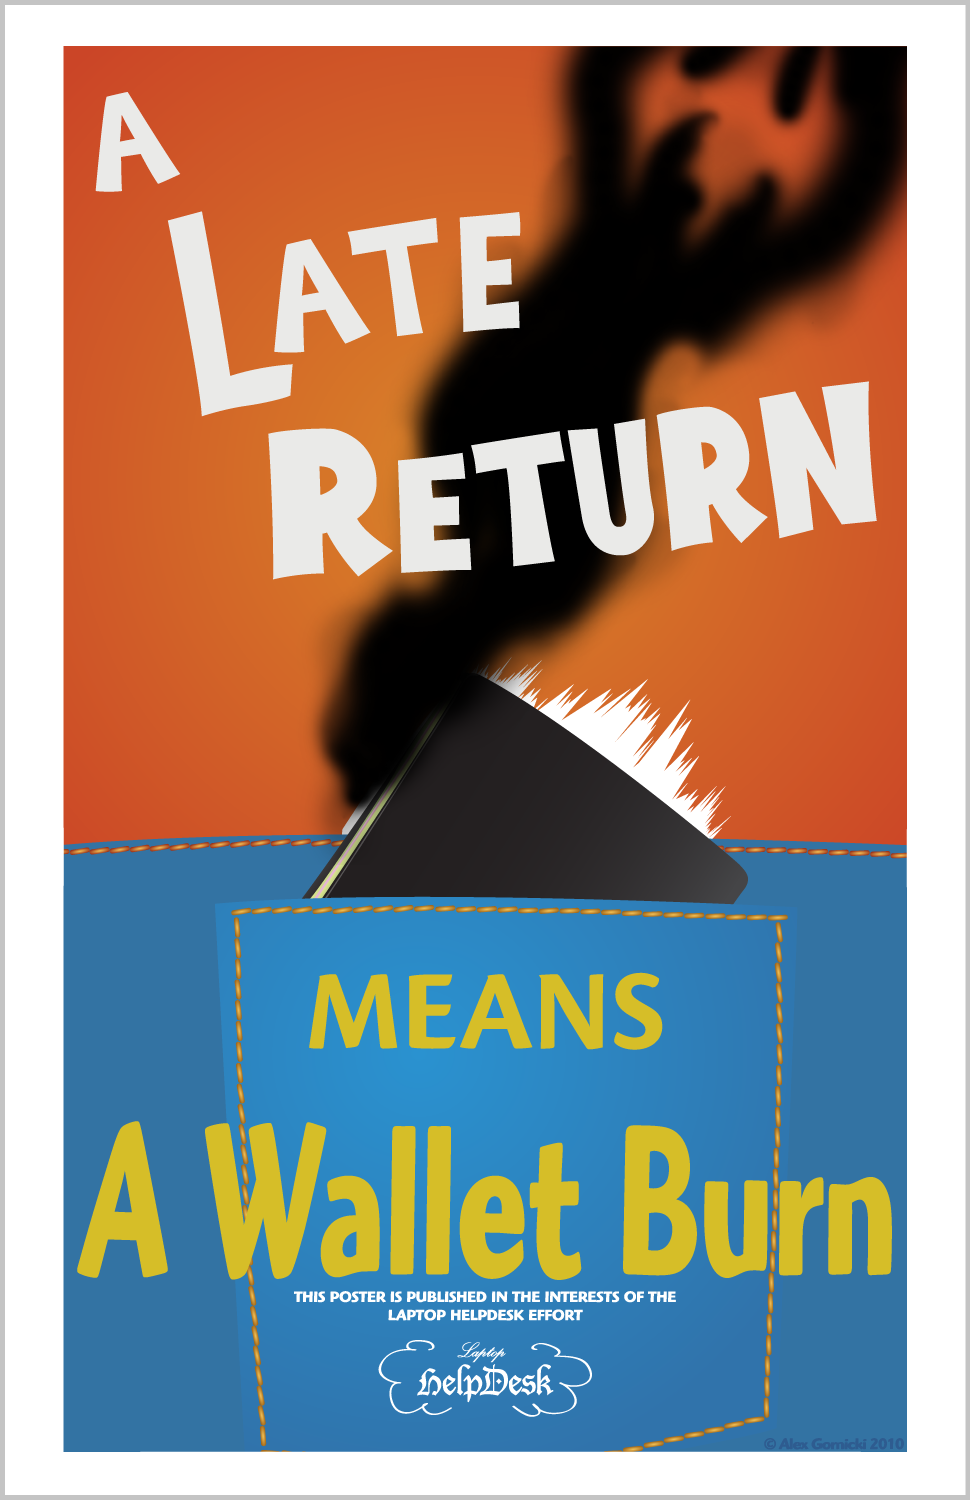 A Wallet Burn...